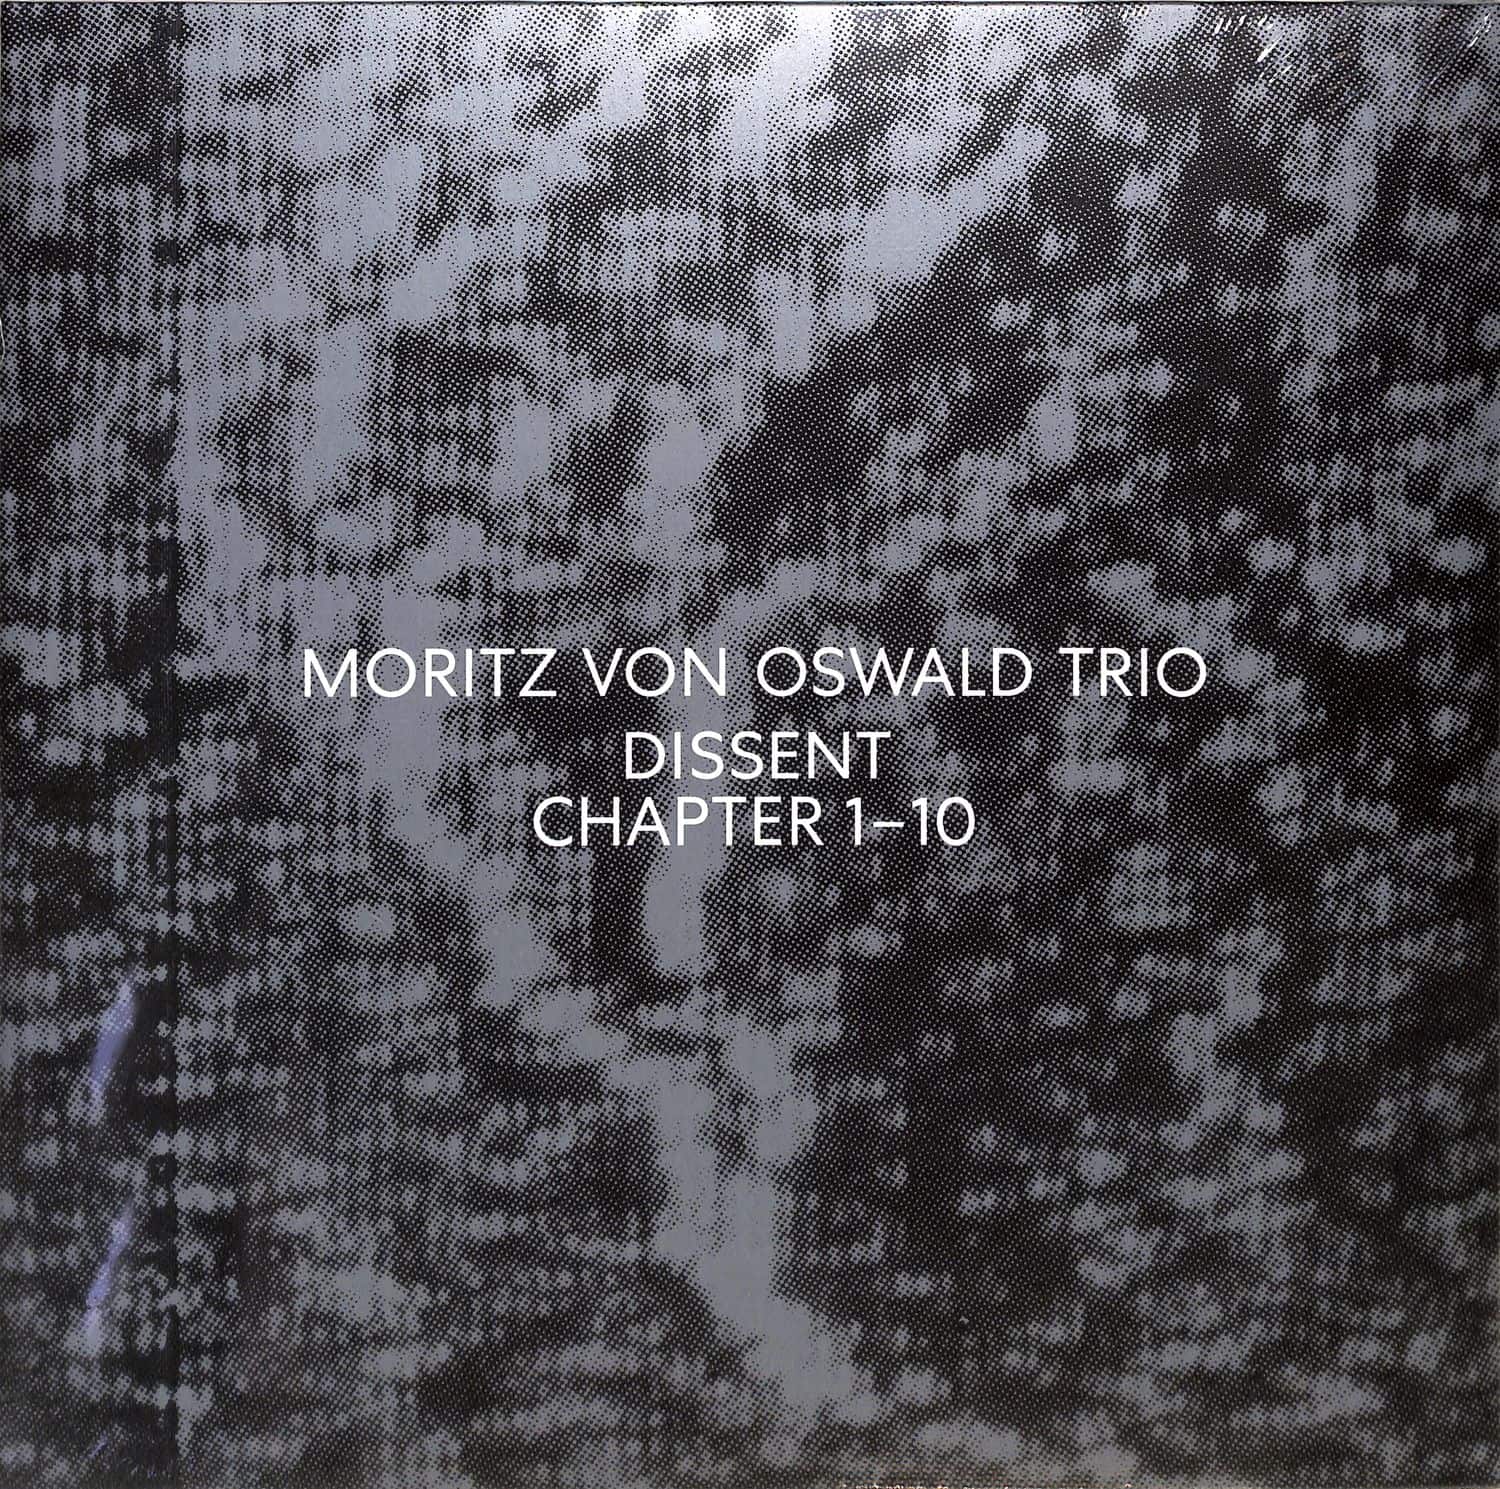 Moritz von Oswald Trio - DISSENT 